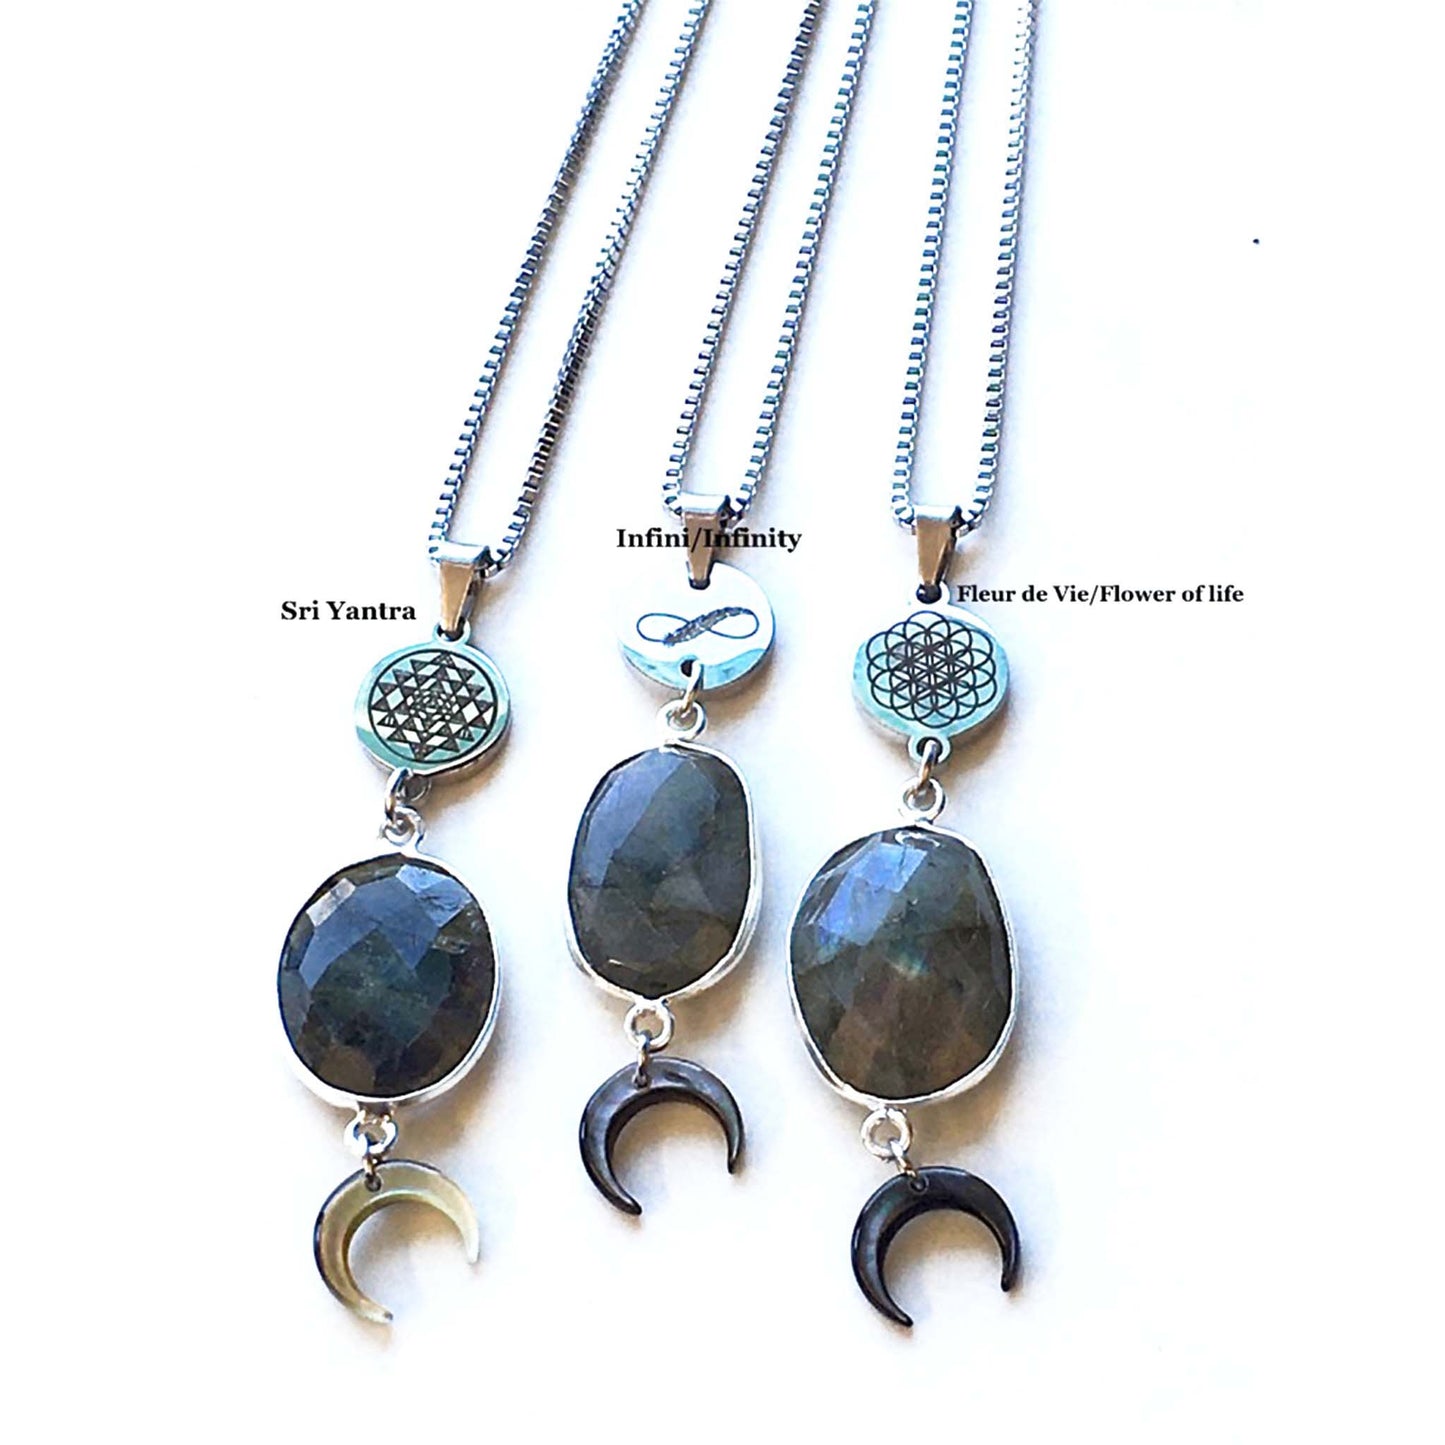 Necklaces - Talisman Labradorite - Choose your symbol